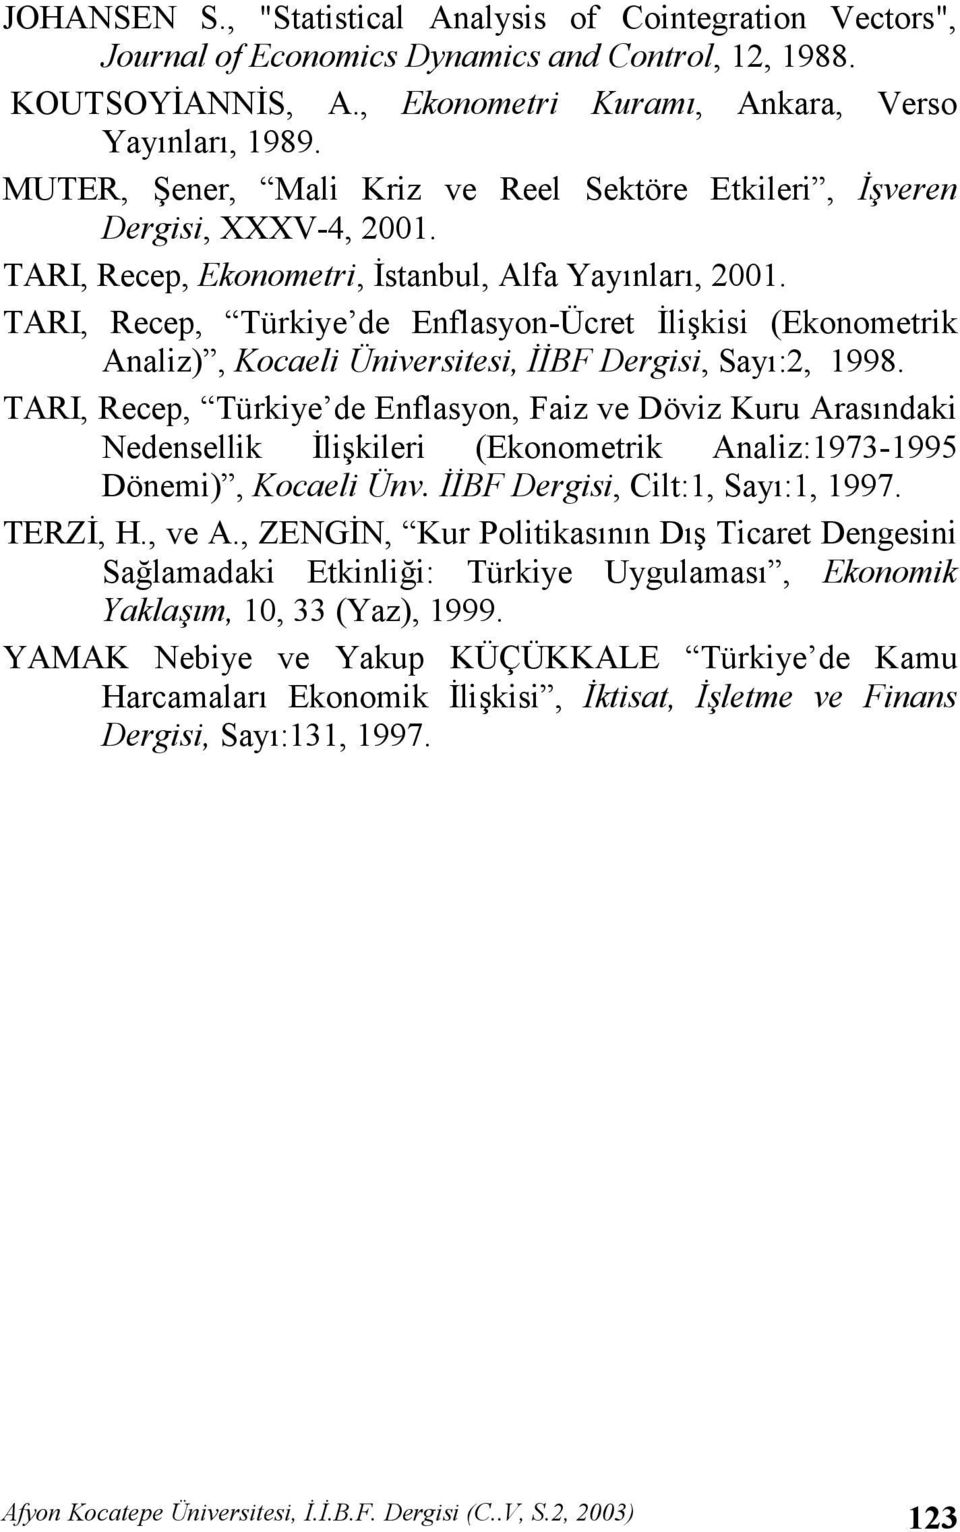 TARI, Recep, Türkiye de Enflasyon-Ücret 0likisi (Ekonometrik Analiz), Kocaeli Üniversitesi, BF Dergisi, Say:2, 1998.